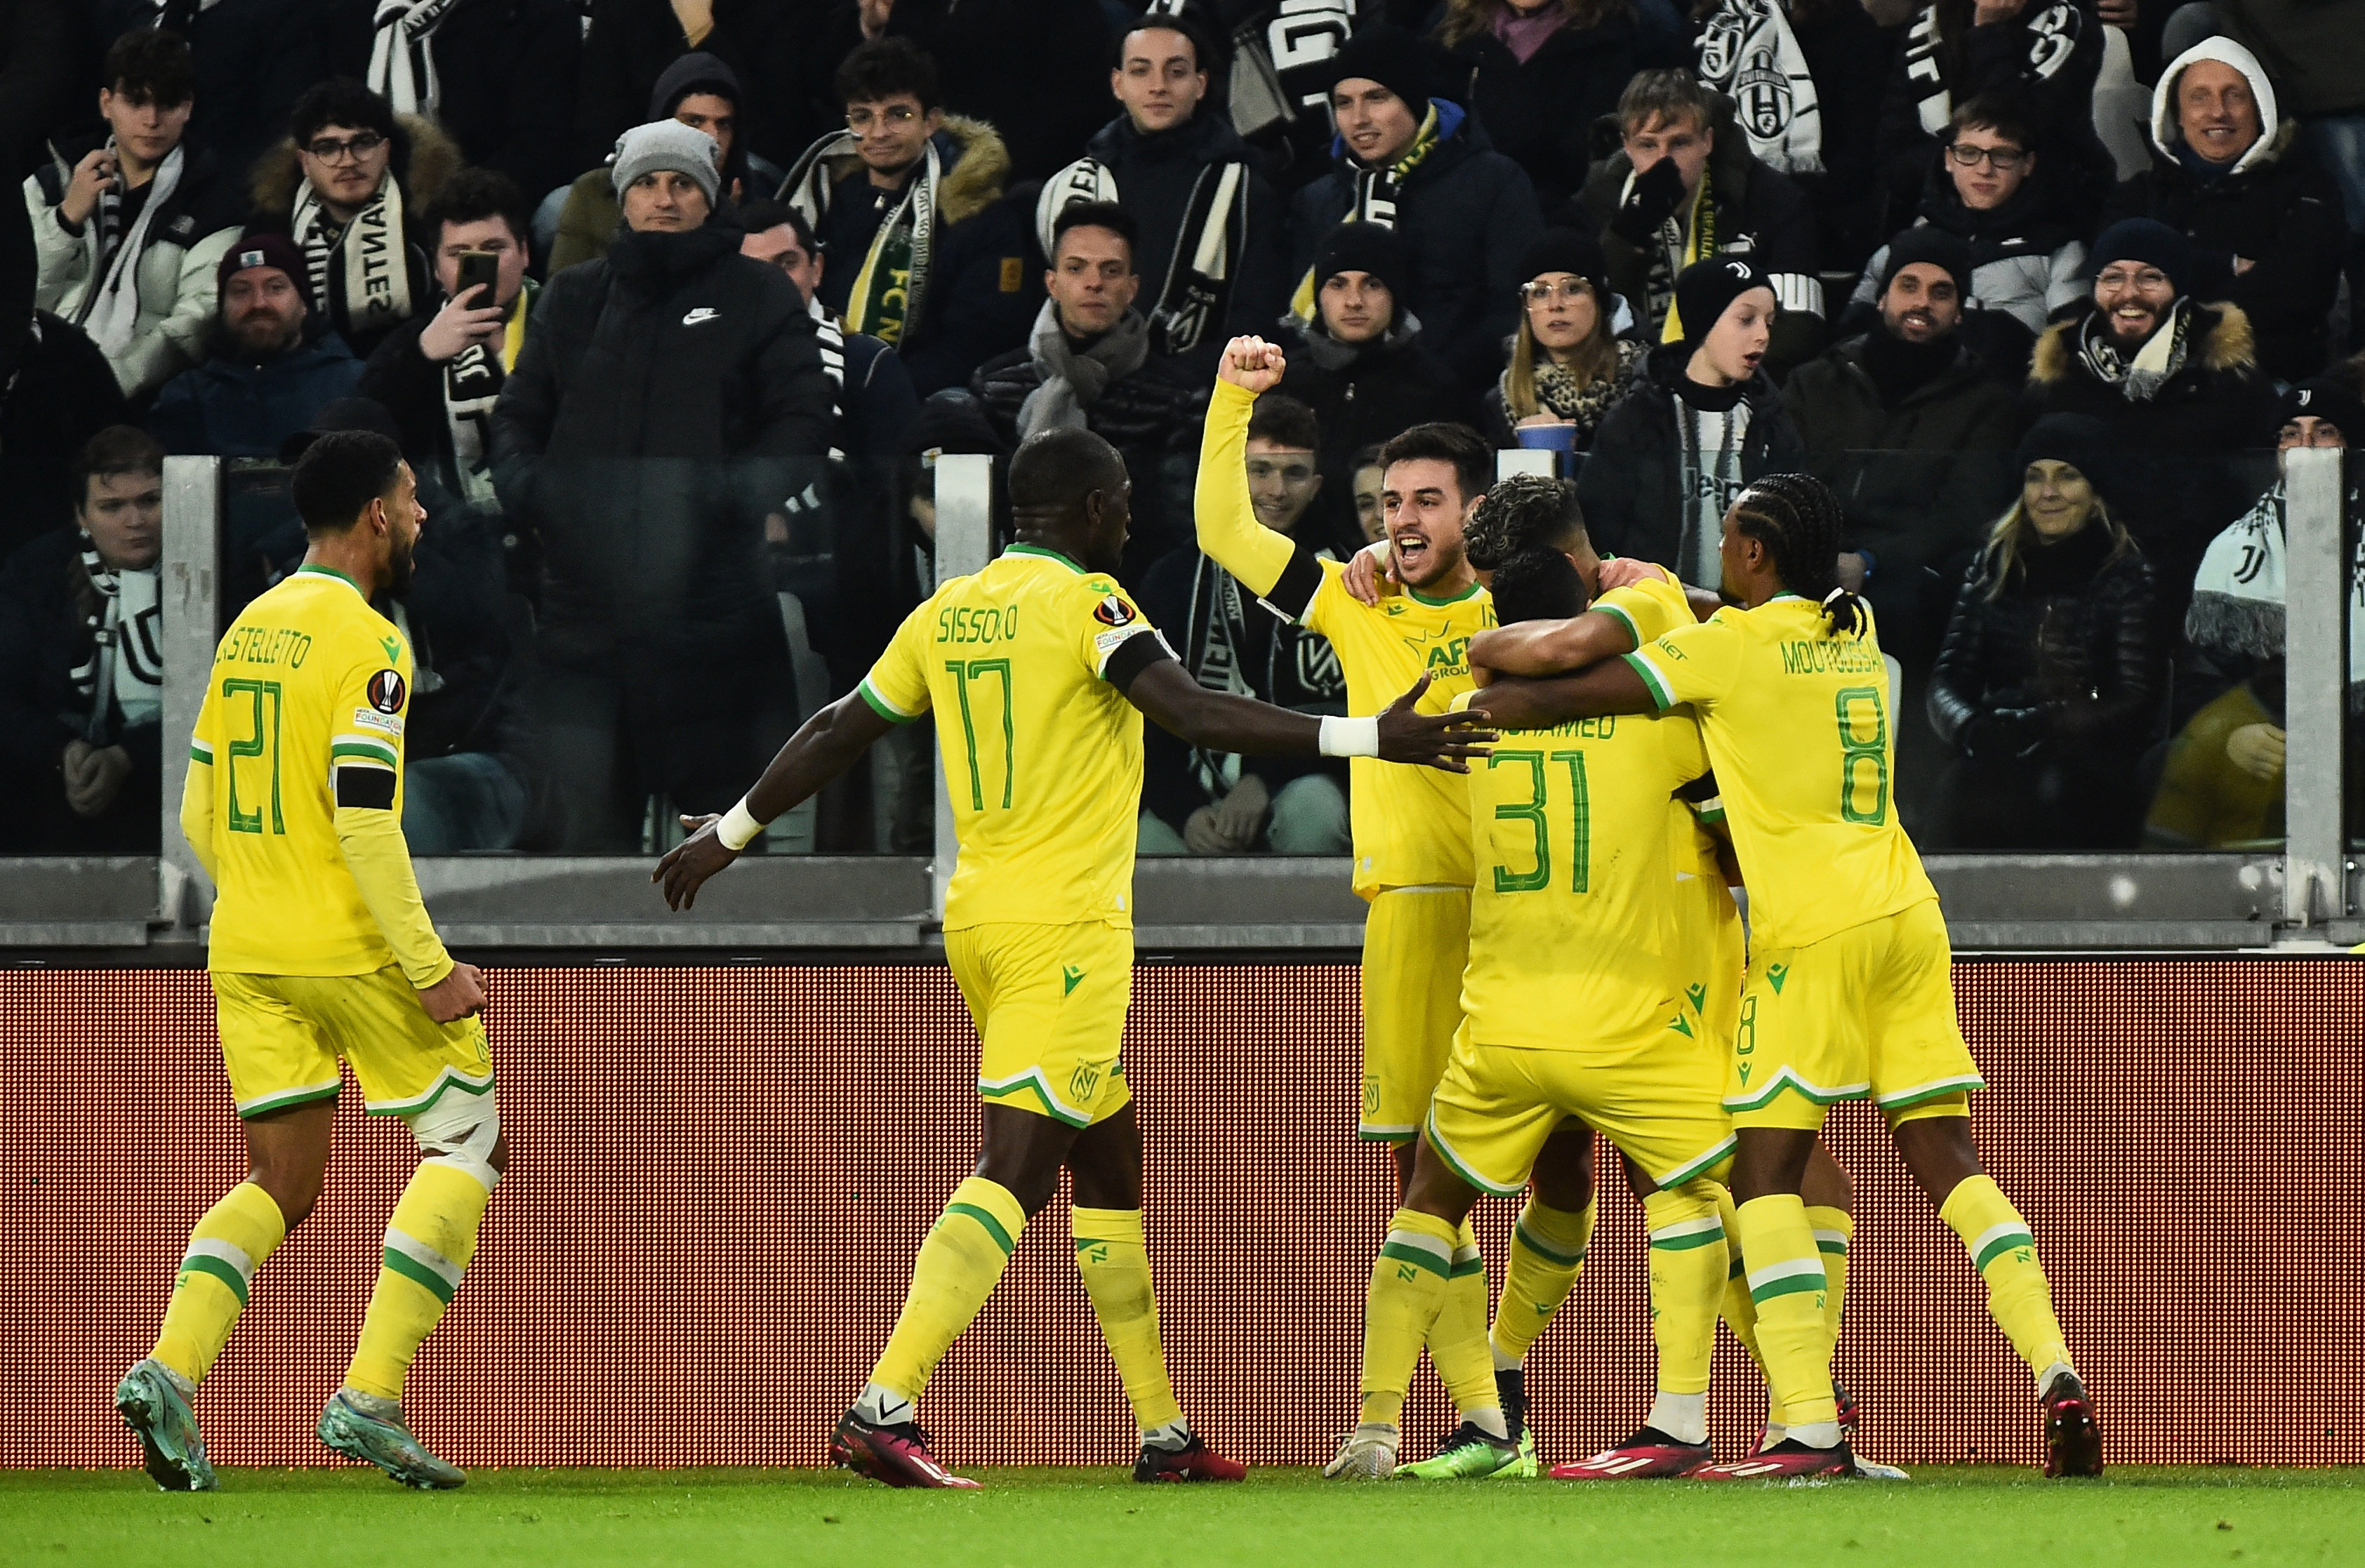 Nantes - Juventus  UEFA Europa League 2022-2023 - Knockout Round Play-offs  - Juventus Men's First Team